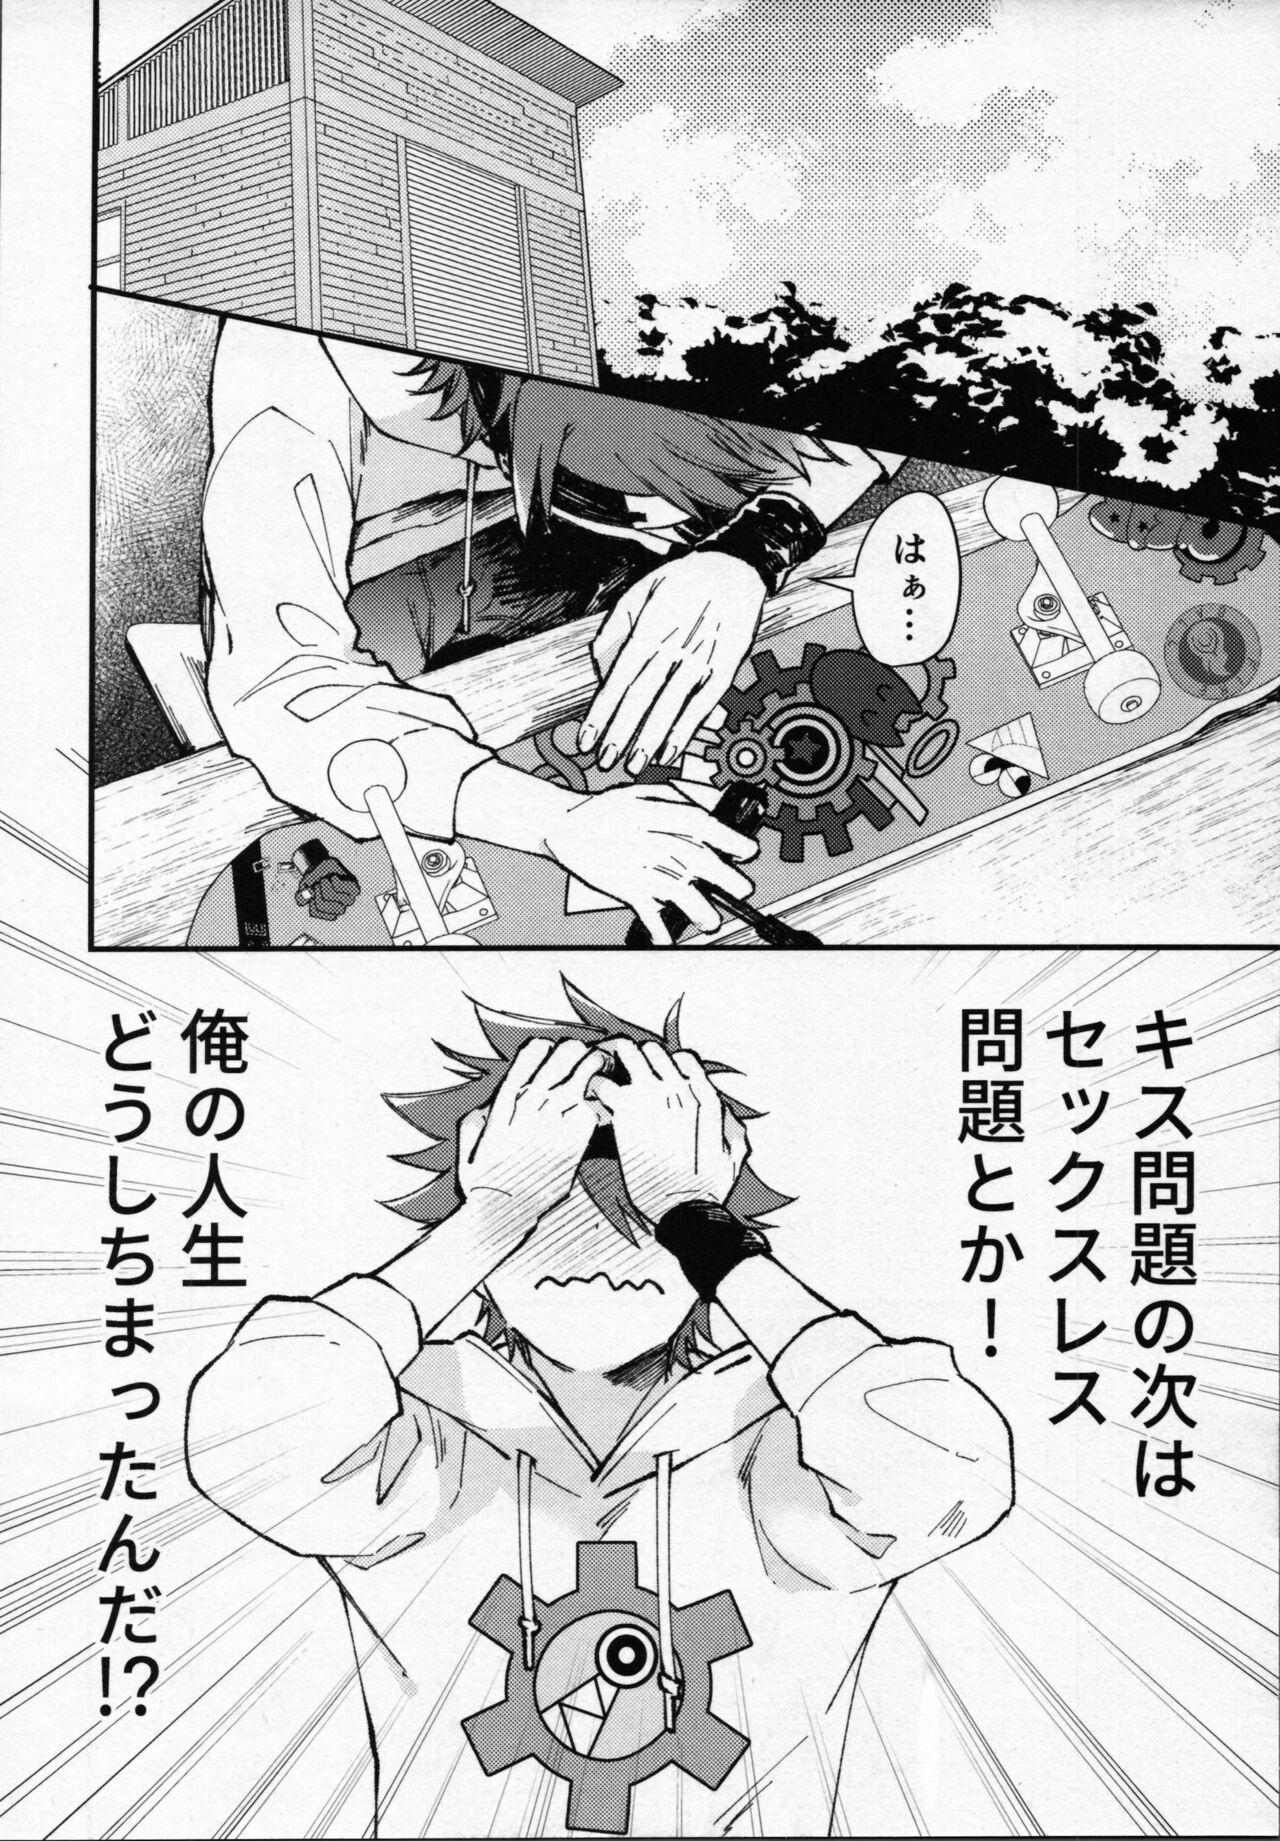 Oral Sex Rekikun wa etchi ga shitai! - Sk8 the infinity Peludo - Page 7